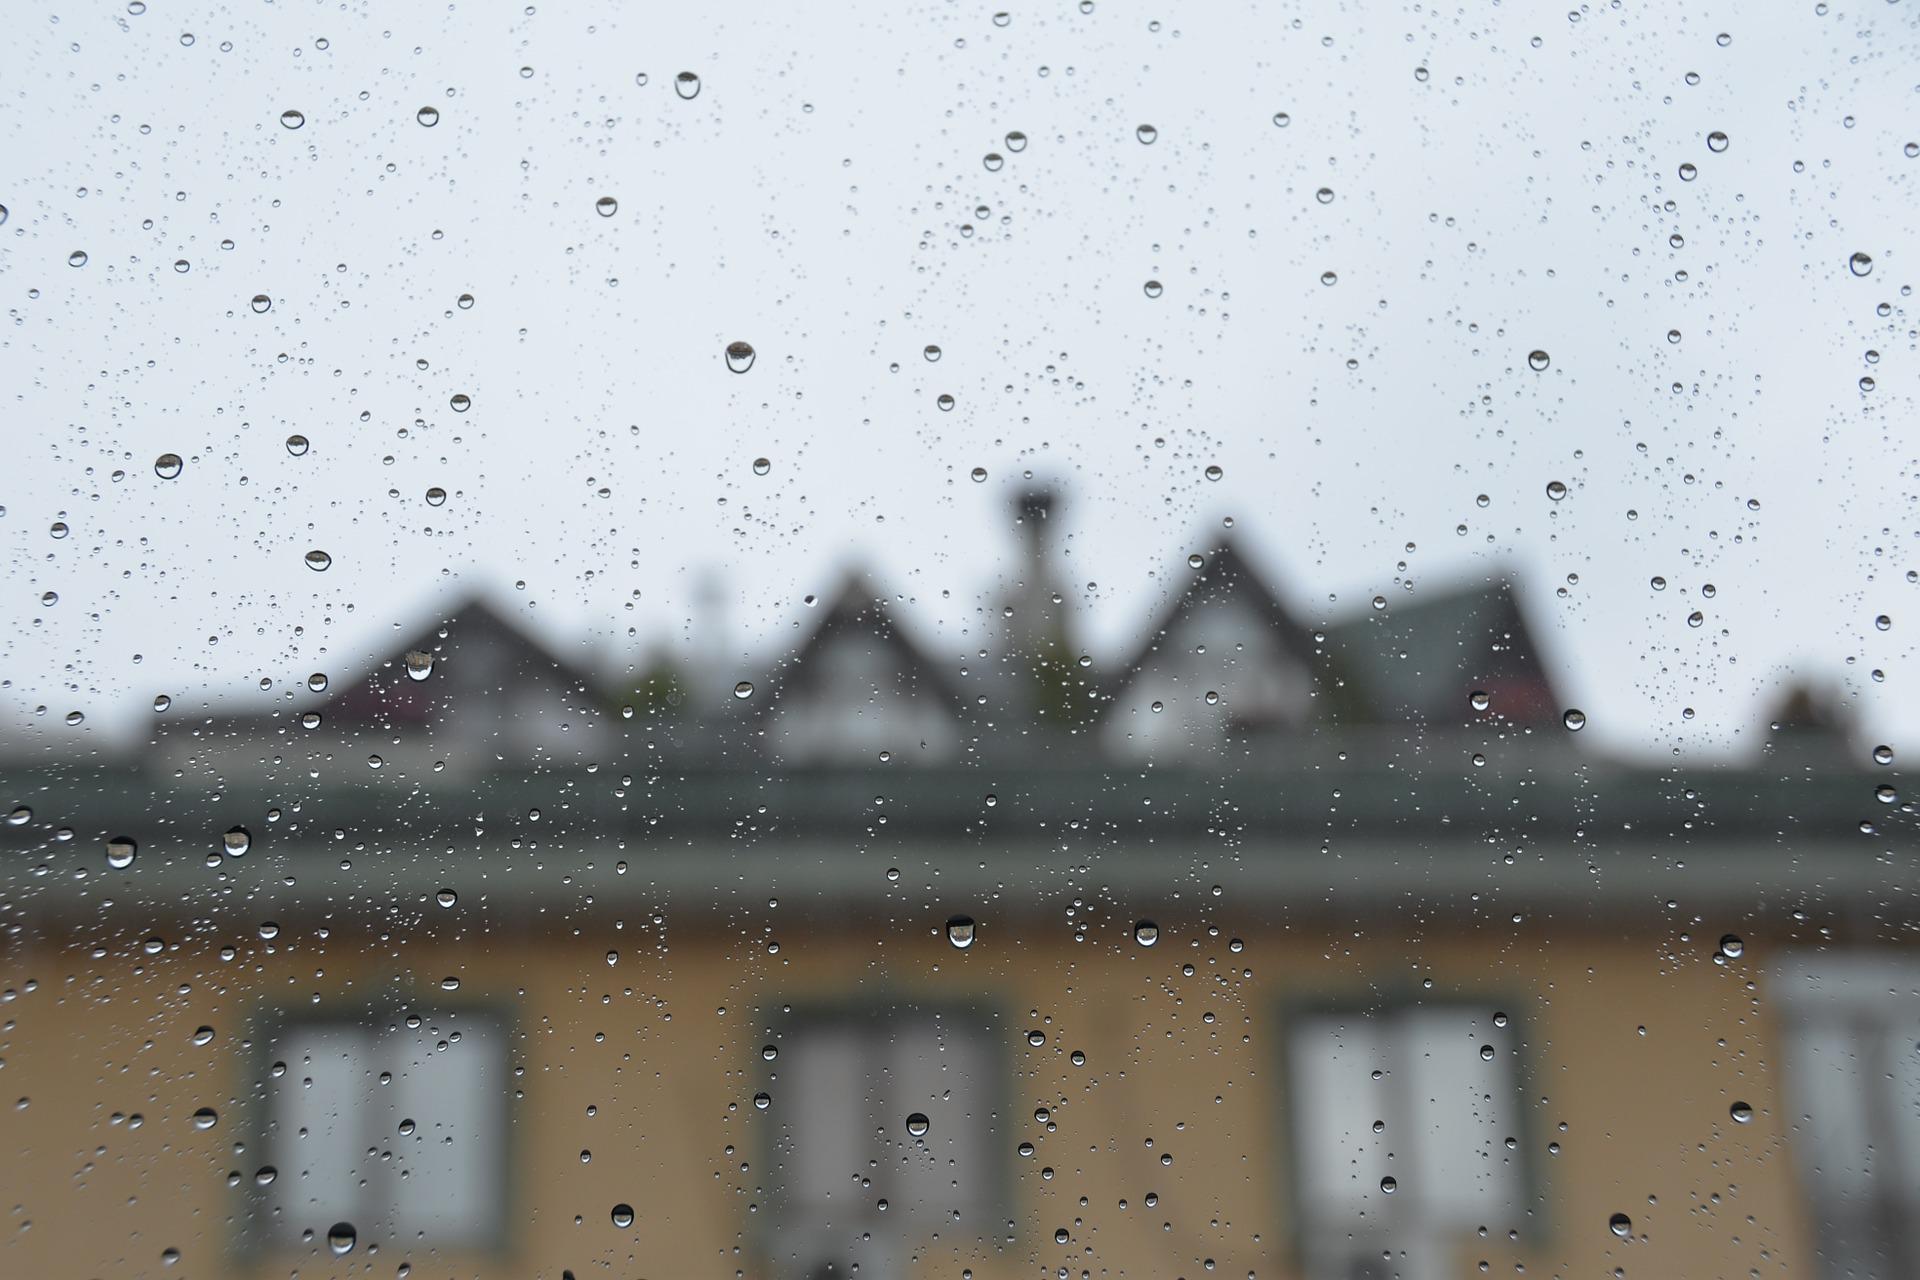 Traumurlaub gebucht – vom Regen im Hotel festgehalten